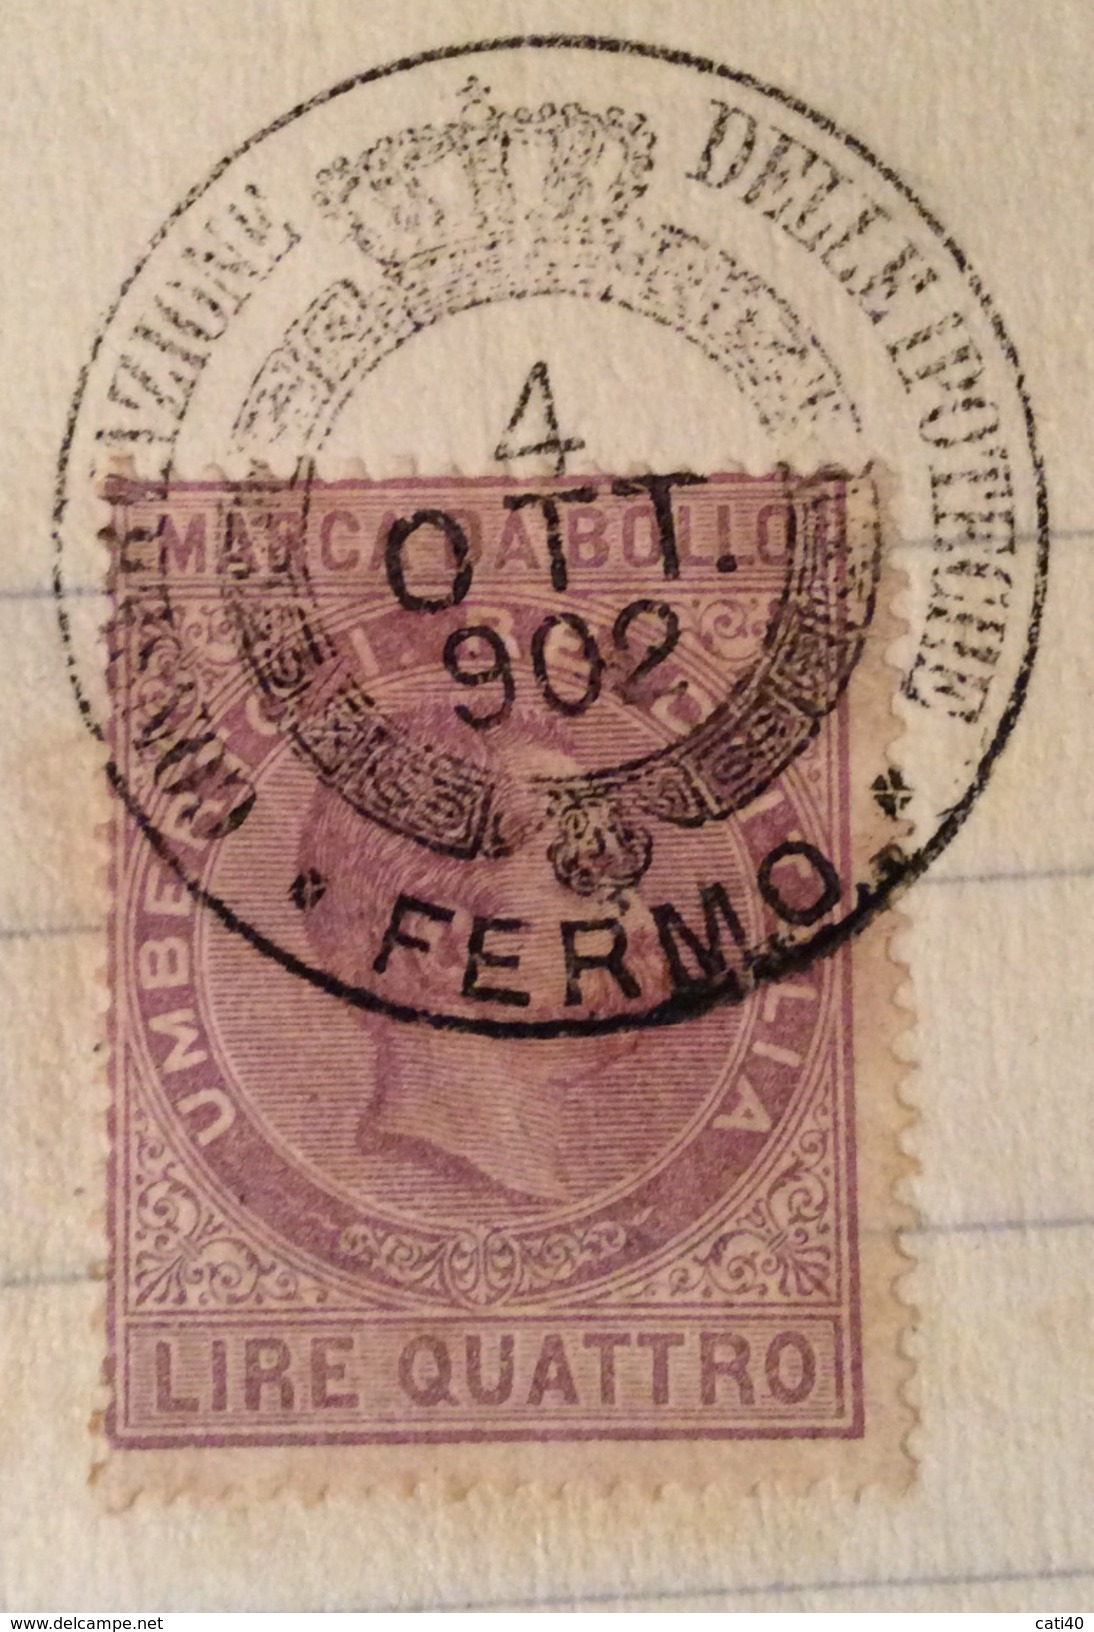 MARCA DA BOLLO UMBERTO LIRE QUATTRO SU DOCUMENTO COMPLETO FERMO 4/10/1902 R - Steuermarken